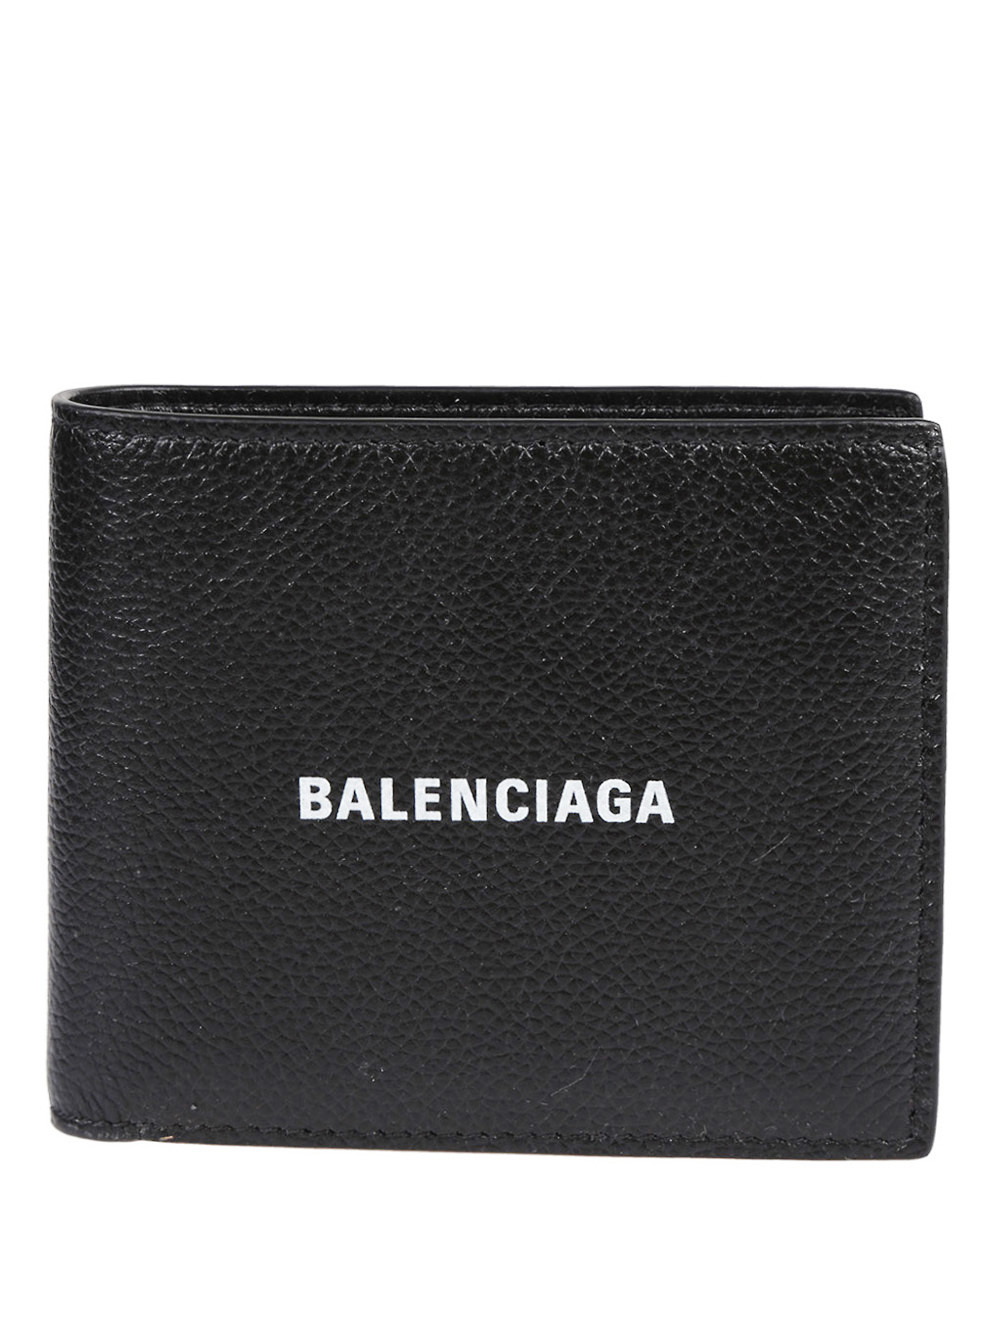 BALENCIAGA - Leather Wallet Balenciaga